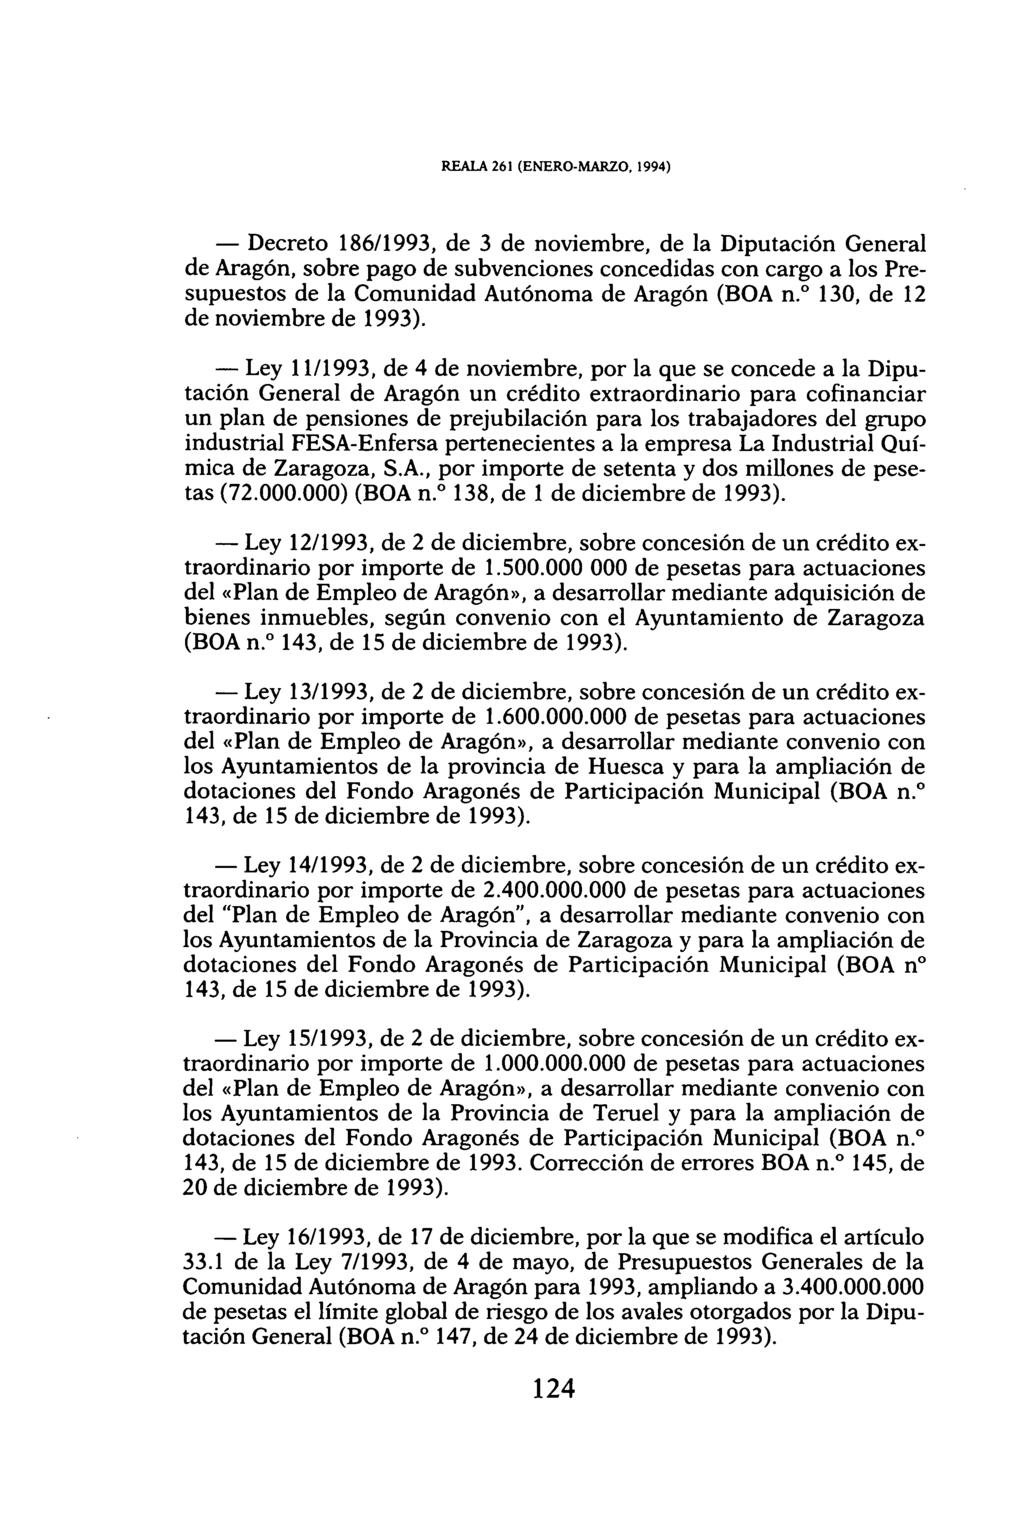 REALA 261 (ENERO-MARZO, 1994) Decreto 186/1993, de 3 de noviembre, de la Diputación General de Aragón, sobre pago de subvenciones concedidas con cargo a los Presupuestos de la Comunidad Autónoma de